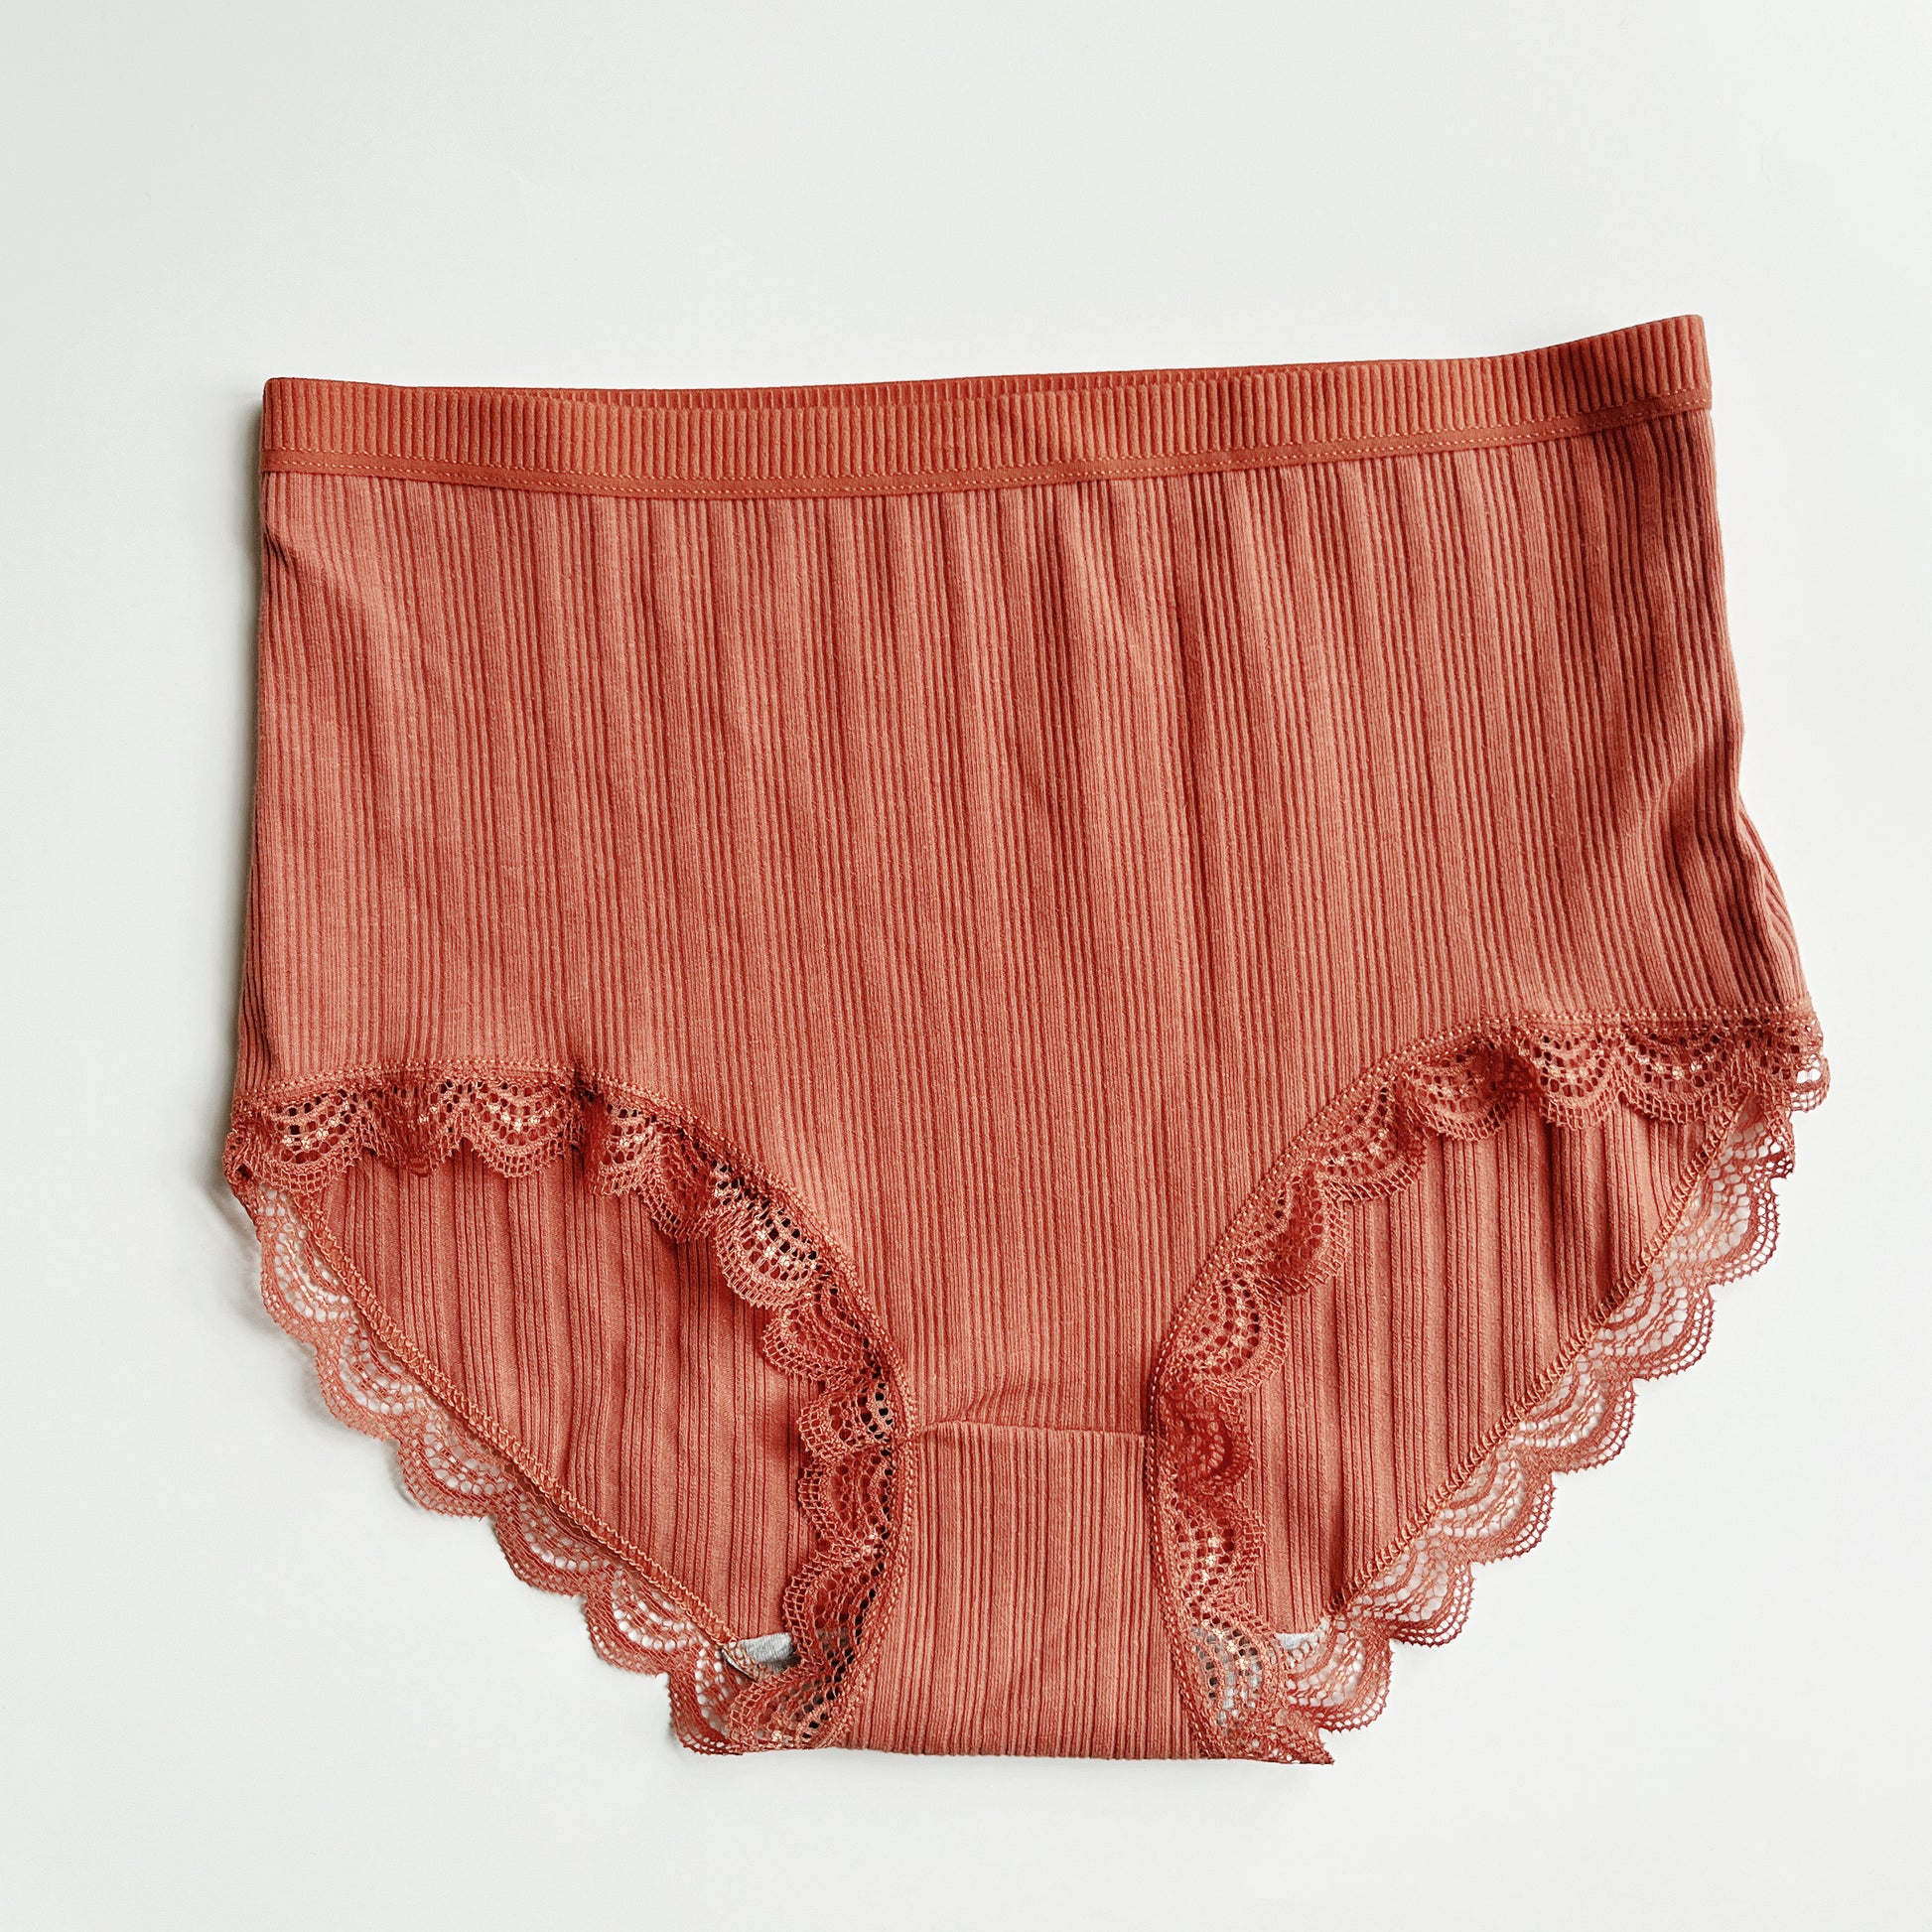 Comfortable Cotton Lace Underwear Set For Women Mid Rise Briefs